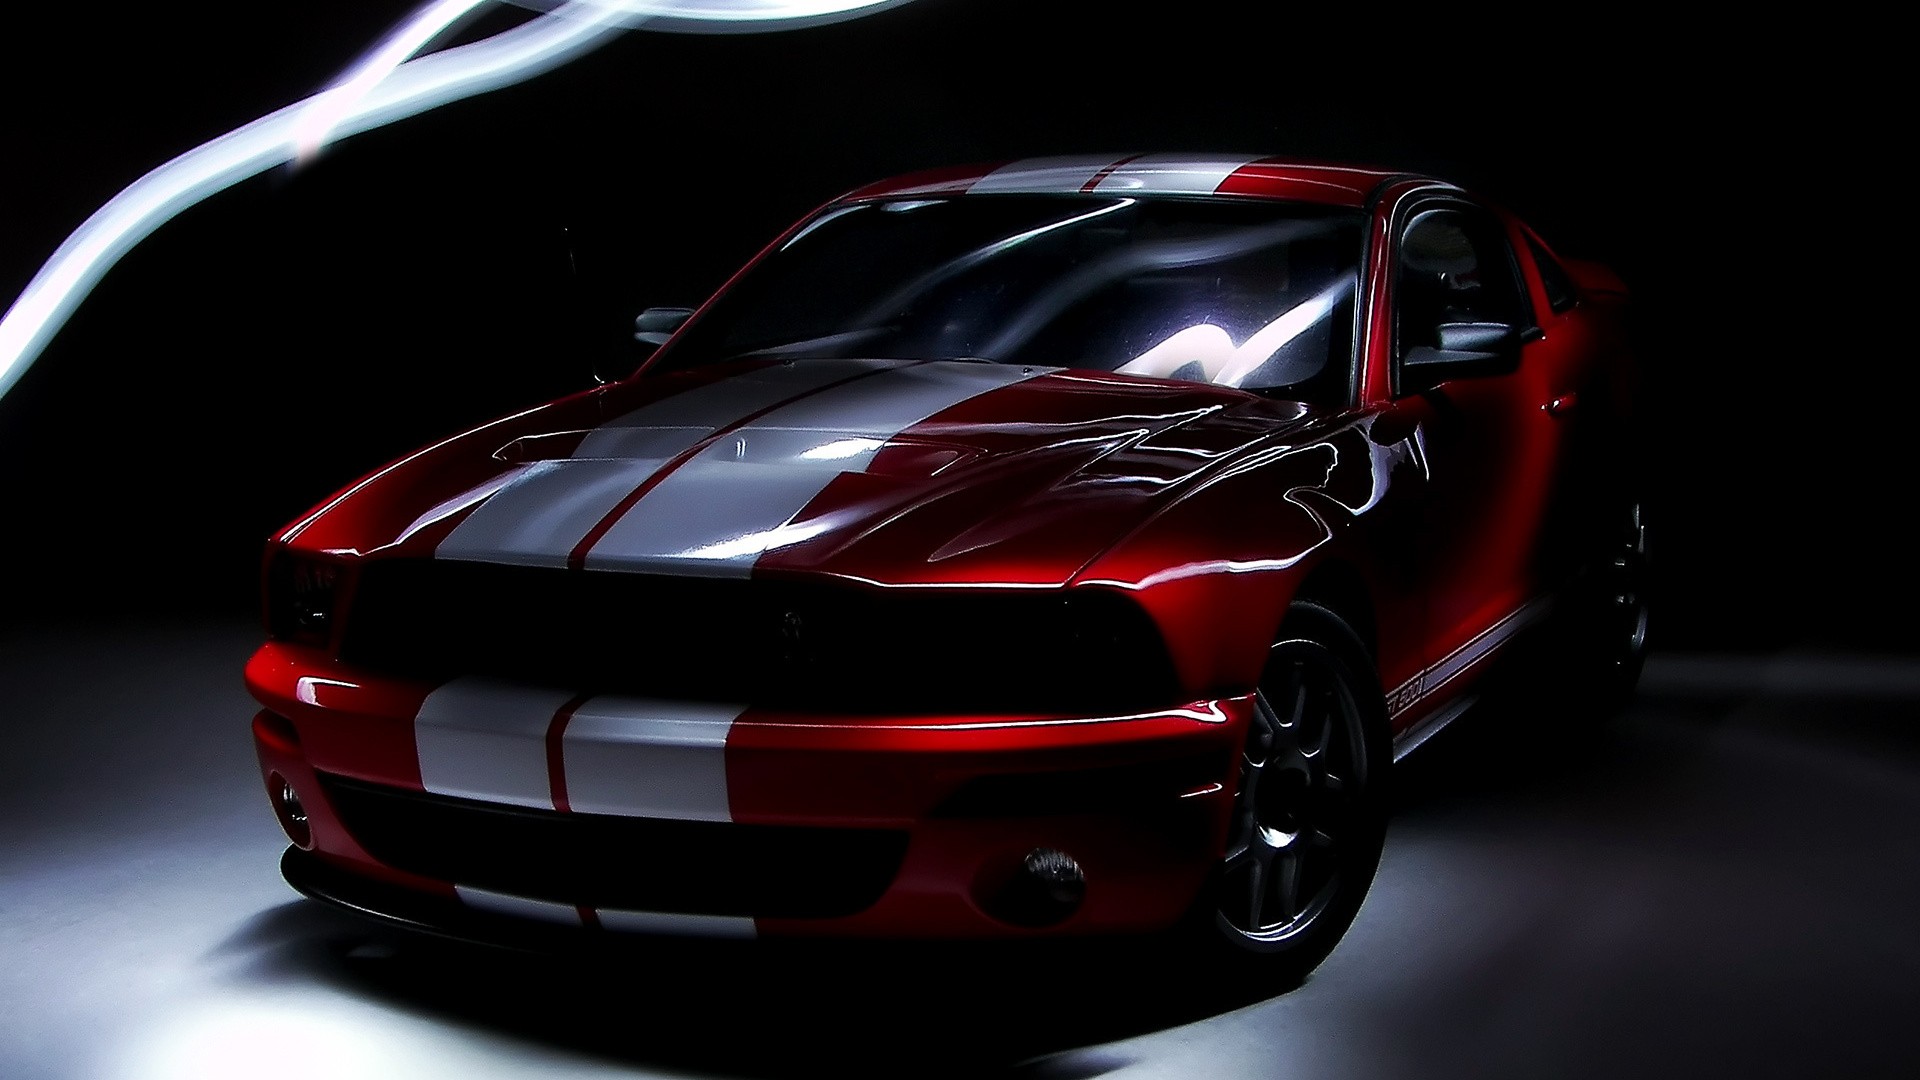 48+] Mustang GT Wallpapers - WallpaperSafari